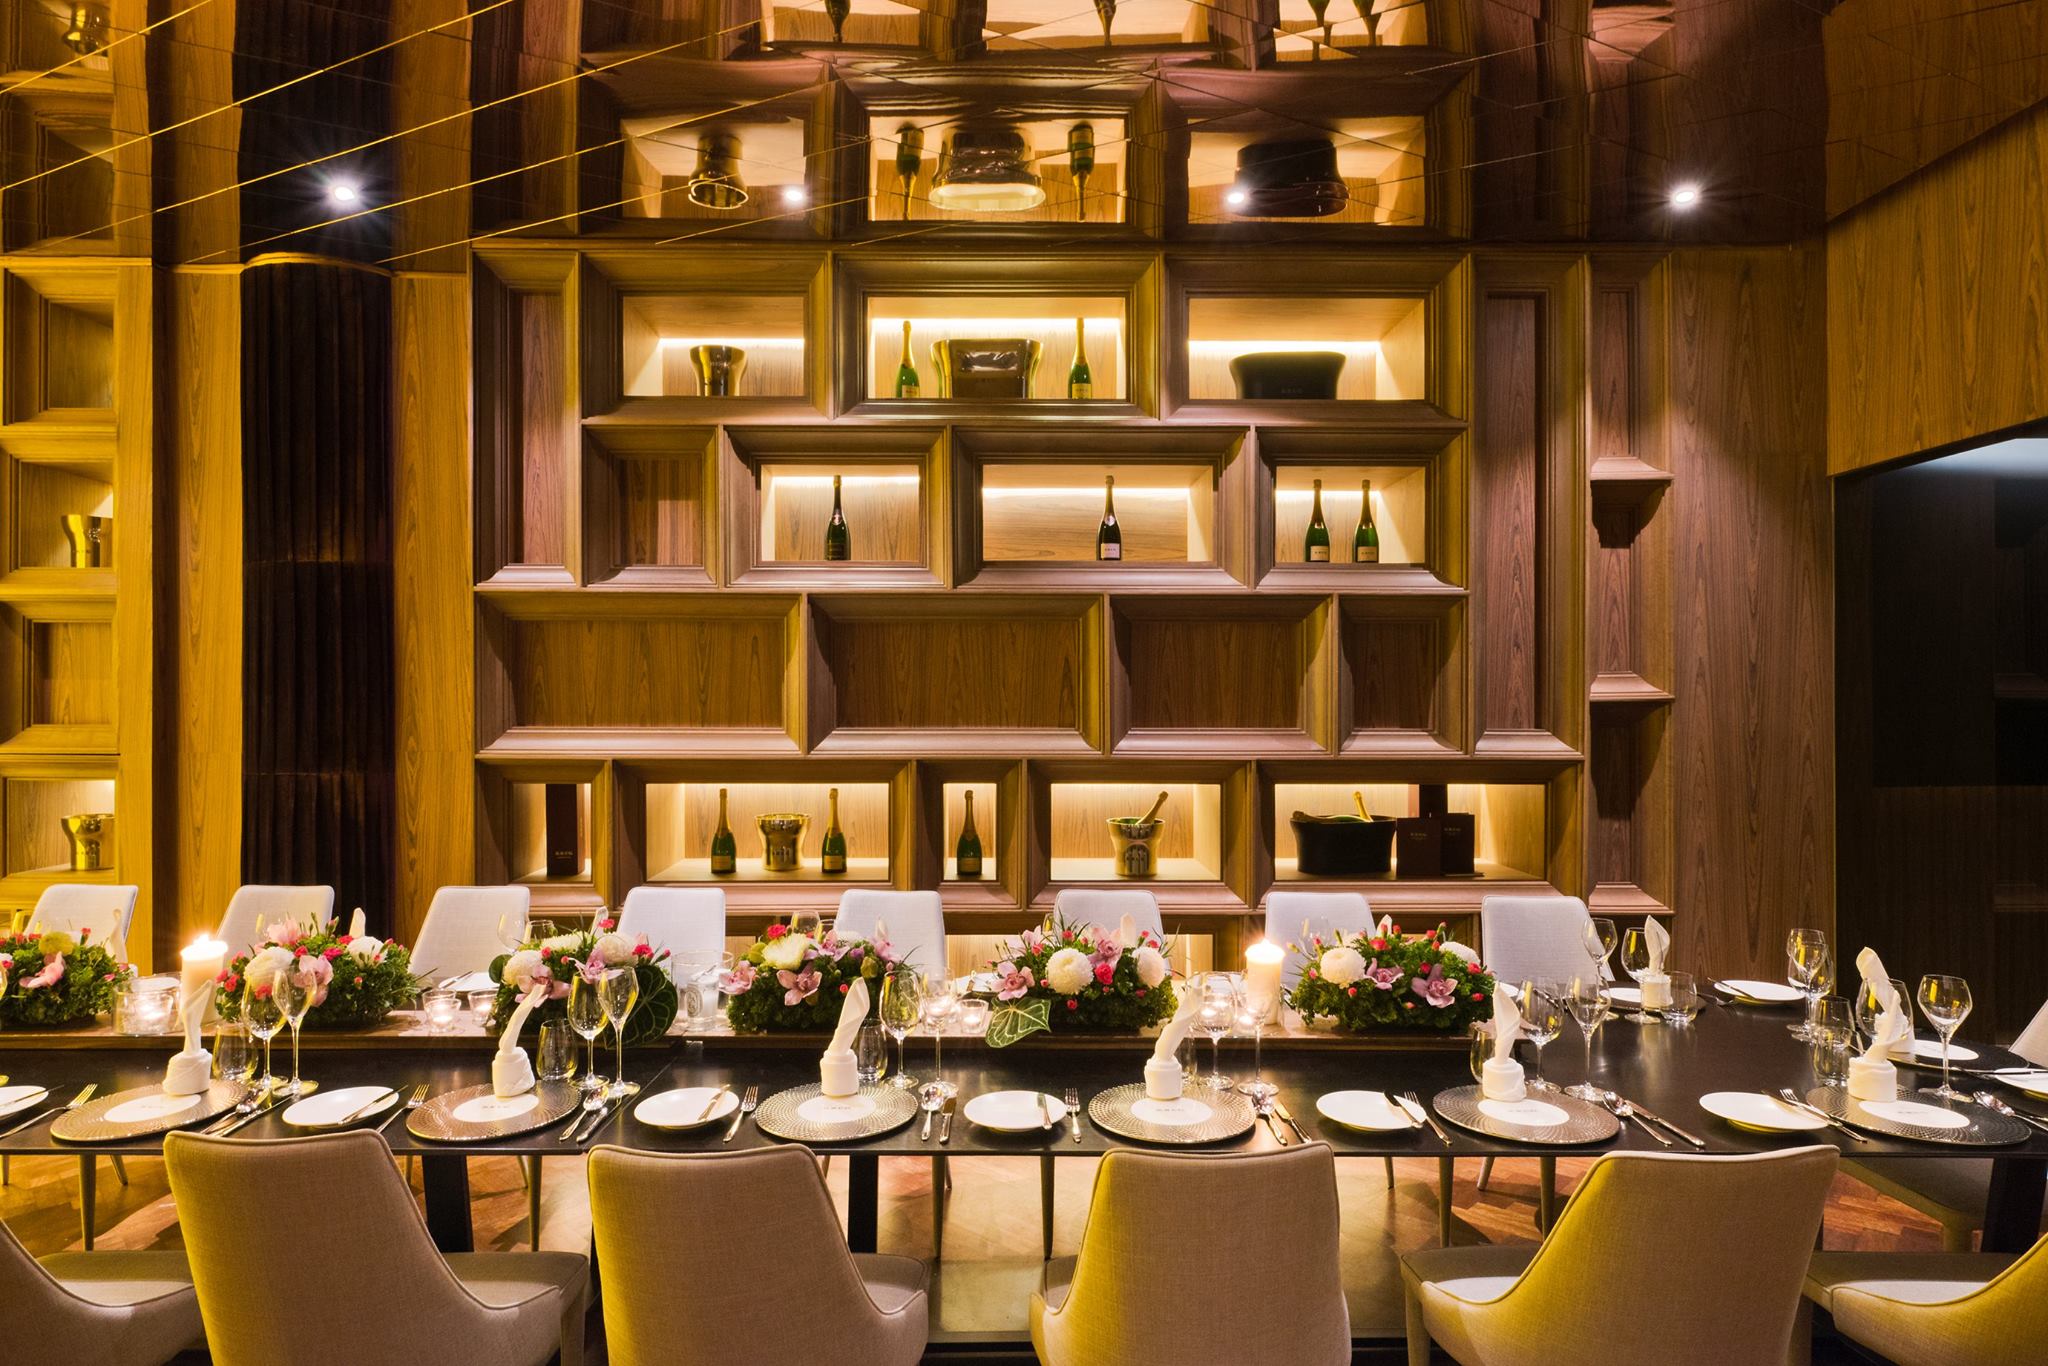 Instagram eats: 5 restaurants in KL with impressive interiors